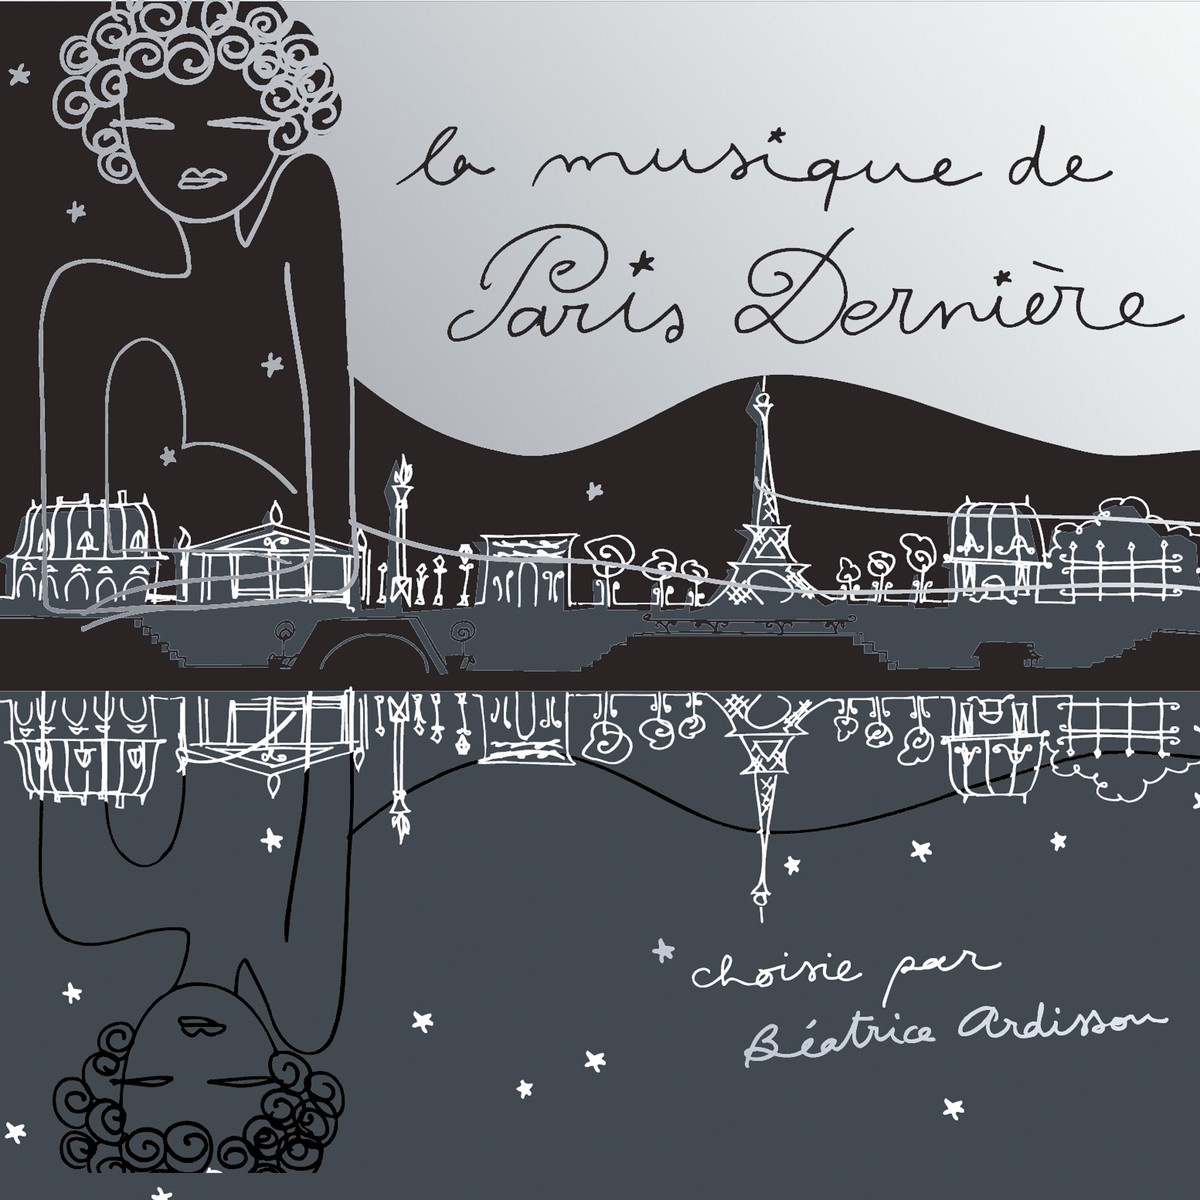 La Musique de Paris Dernie re 3